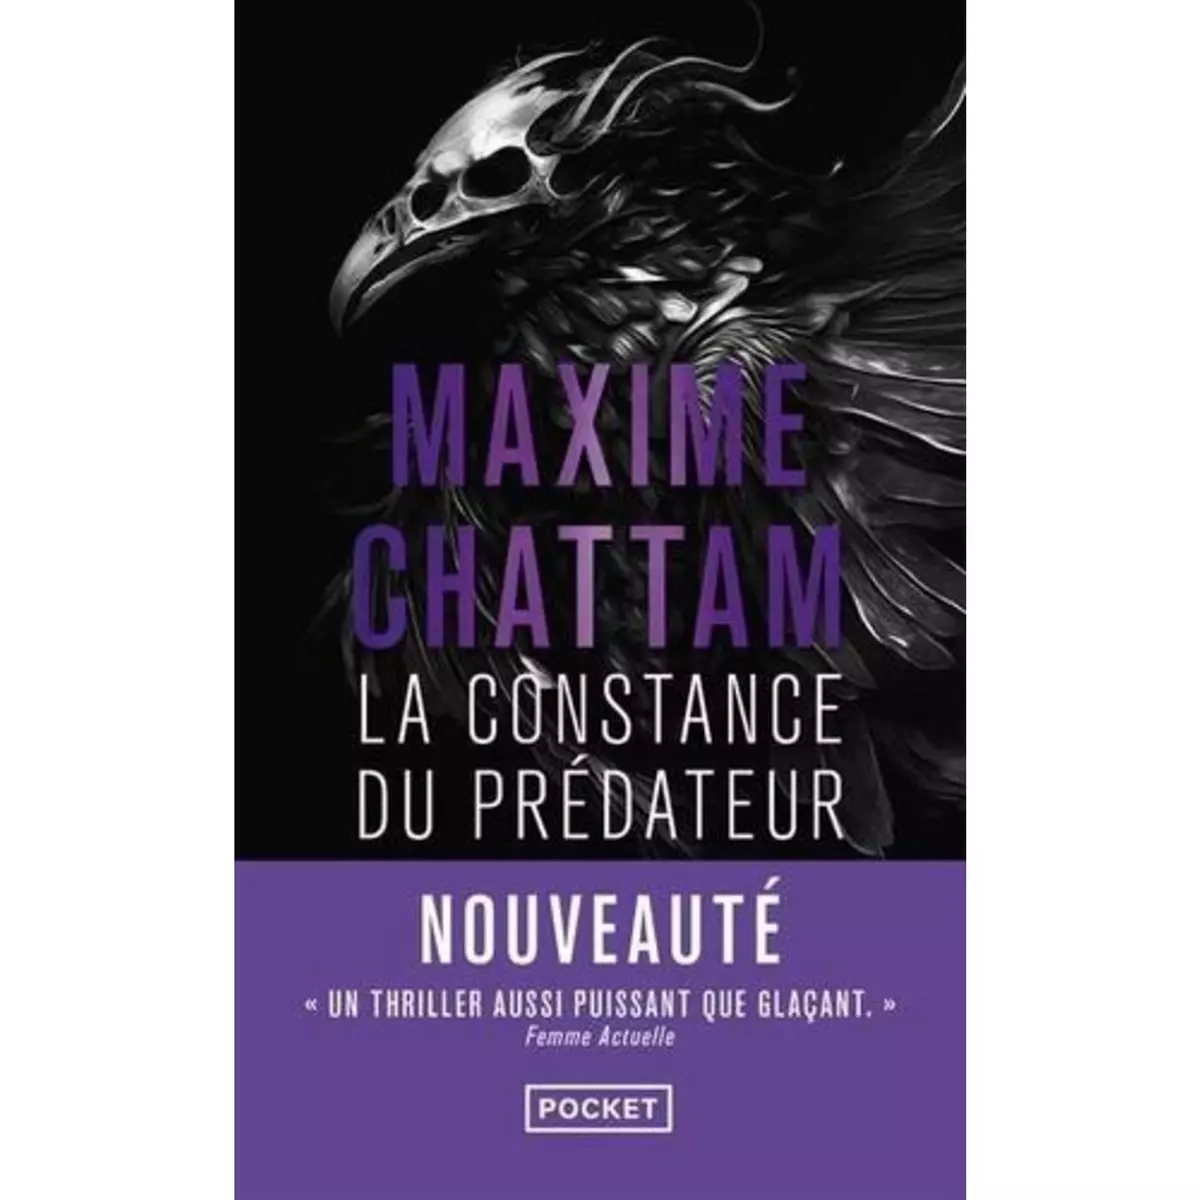  LA CONSTANCE DU PREDATEUR, Chattam Maxime